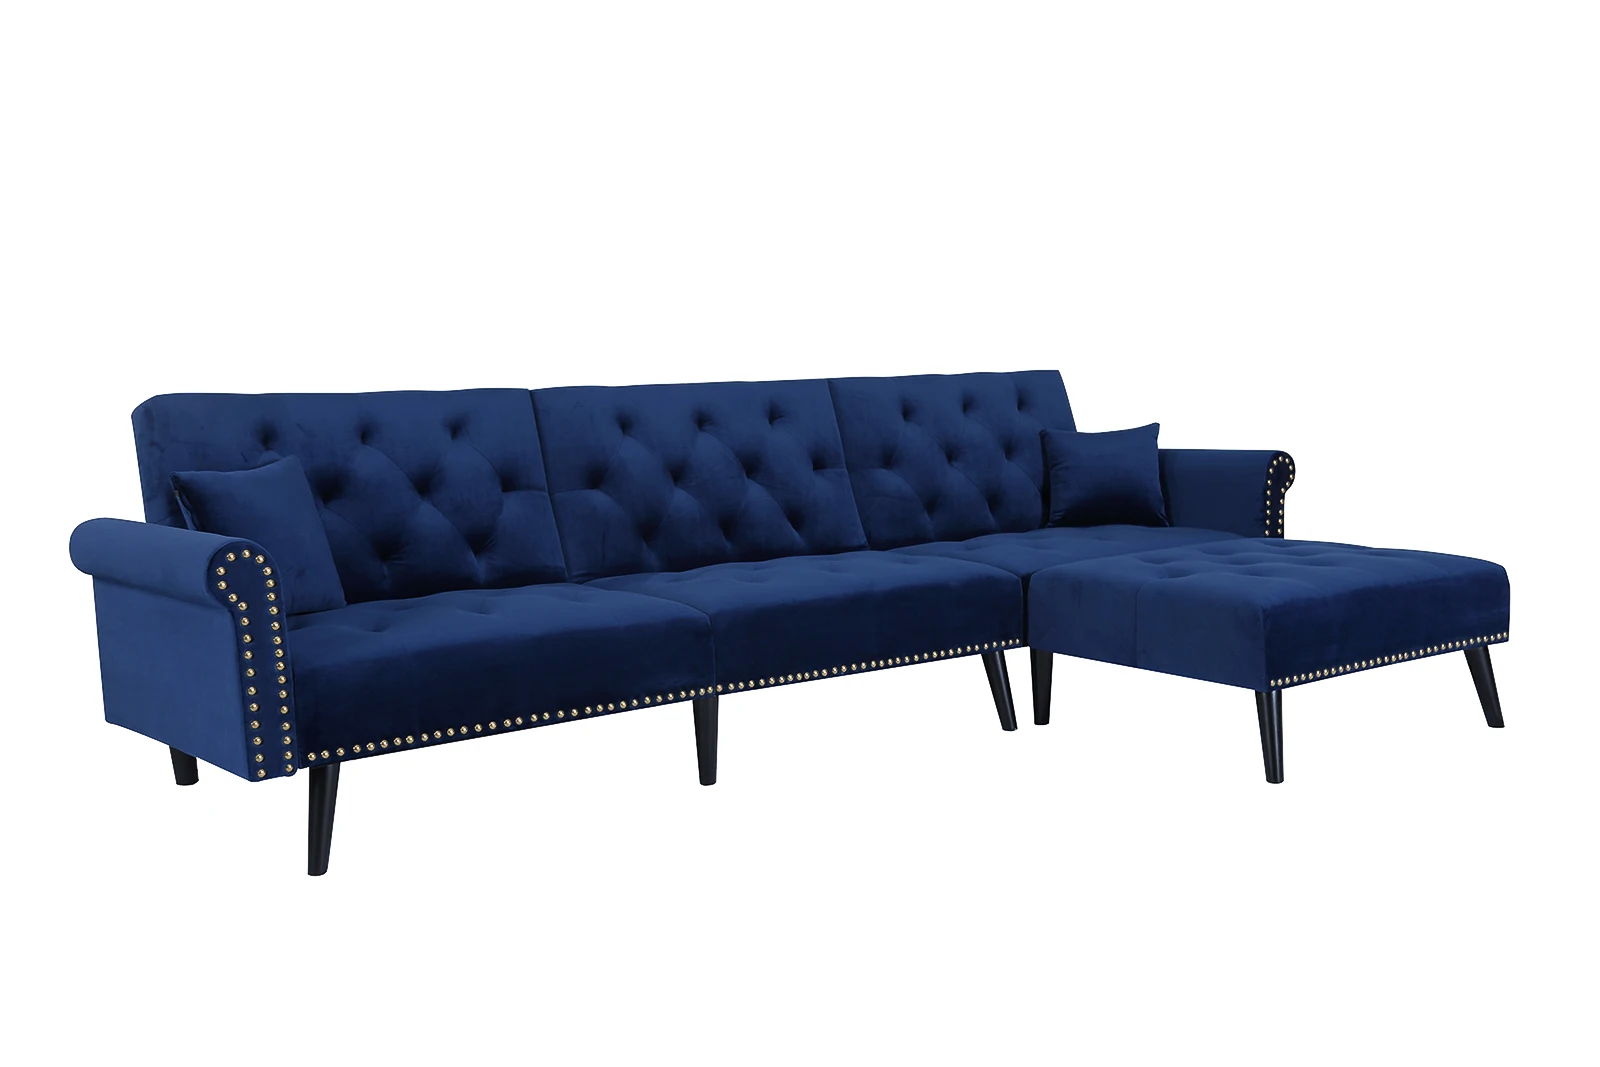 

Чехлы для диванов, трансформируемые, из бархатной ткани, для гостиной, кресла, темно-синий цвет, безопасно для окружающей среды